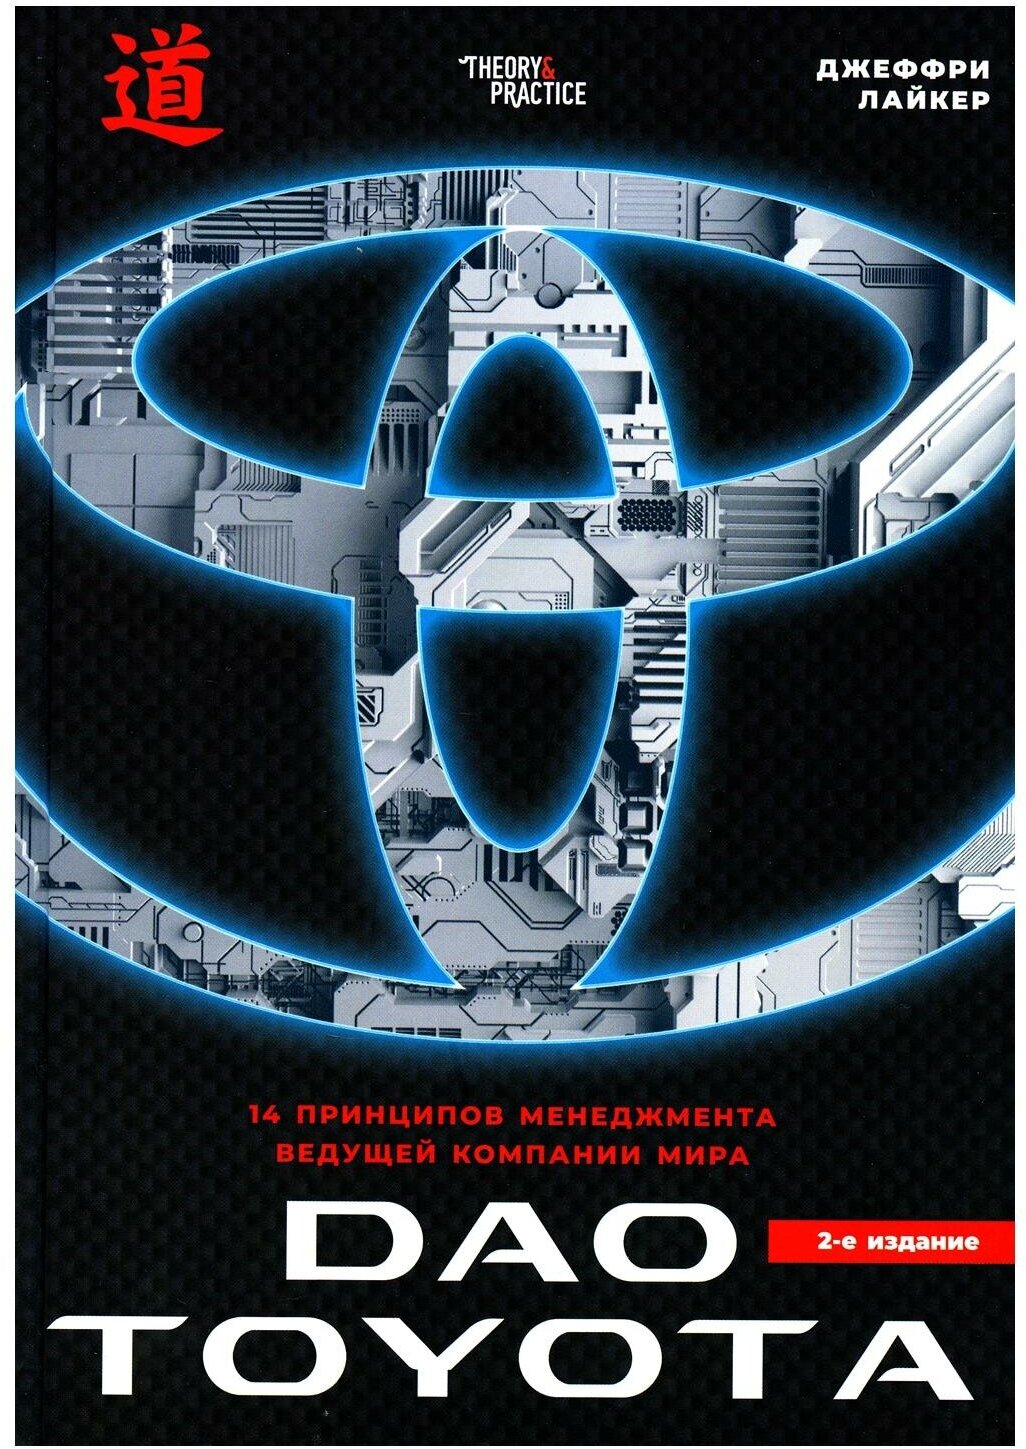 Дао Toyota: 14 принципов менеджмента ведущей компании мира. 2-е изд. Лайкер Дж. Теории от практиков